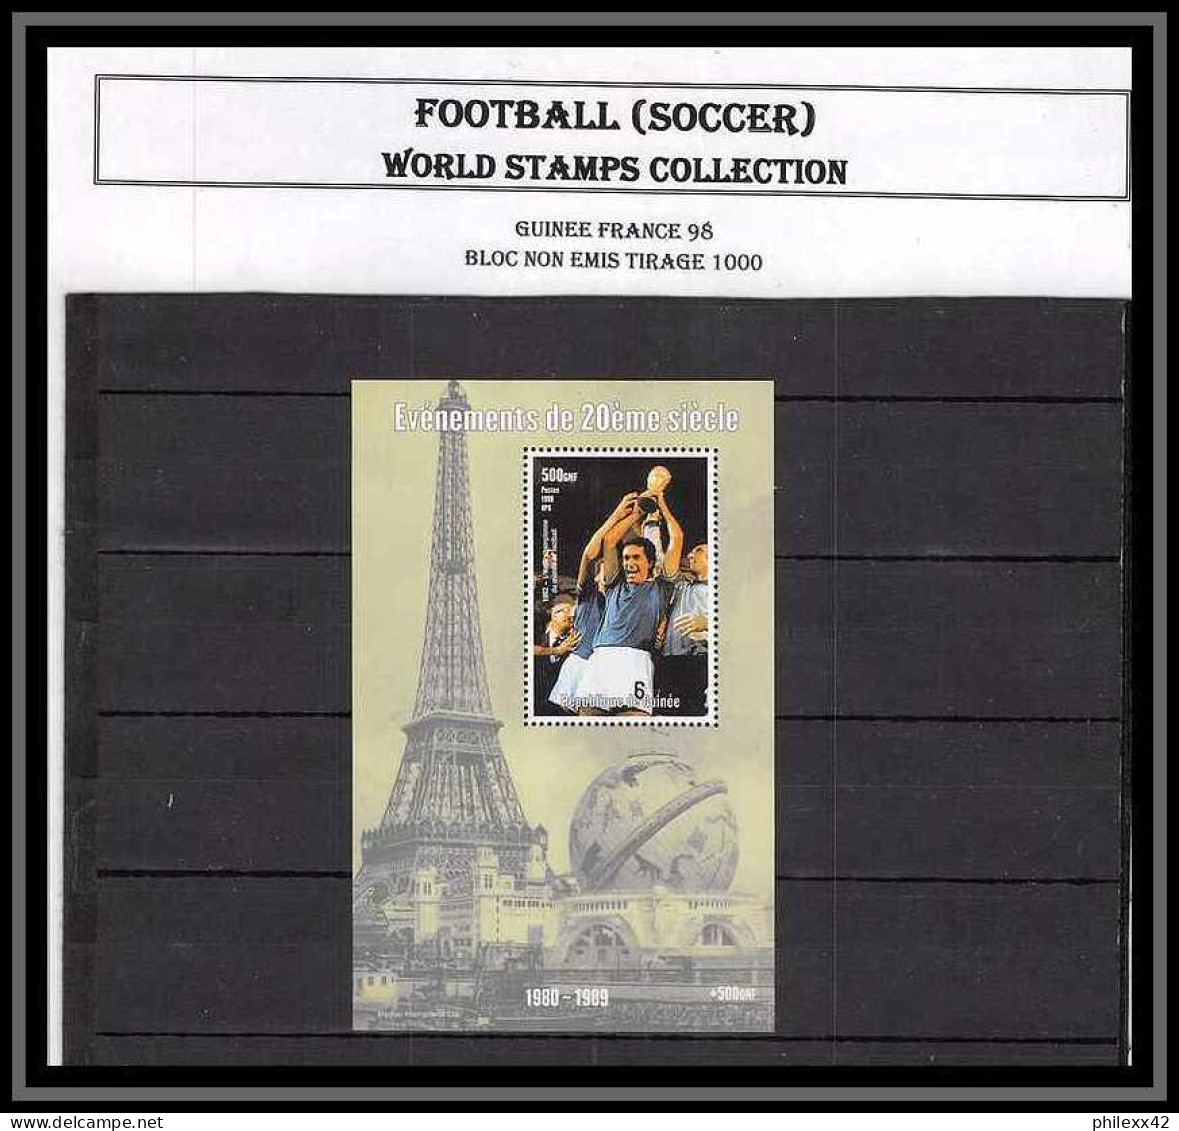 Superbe COLLECTION Thématique FOOTBALL (soccer) 2 Albums Neuf ** Mnh épreuve Artiste ...146 Scans à Voir - Collections (sans Albums)